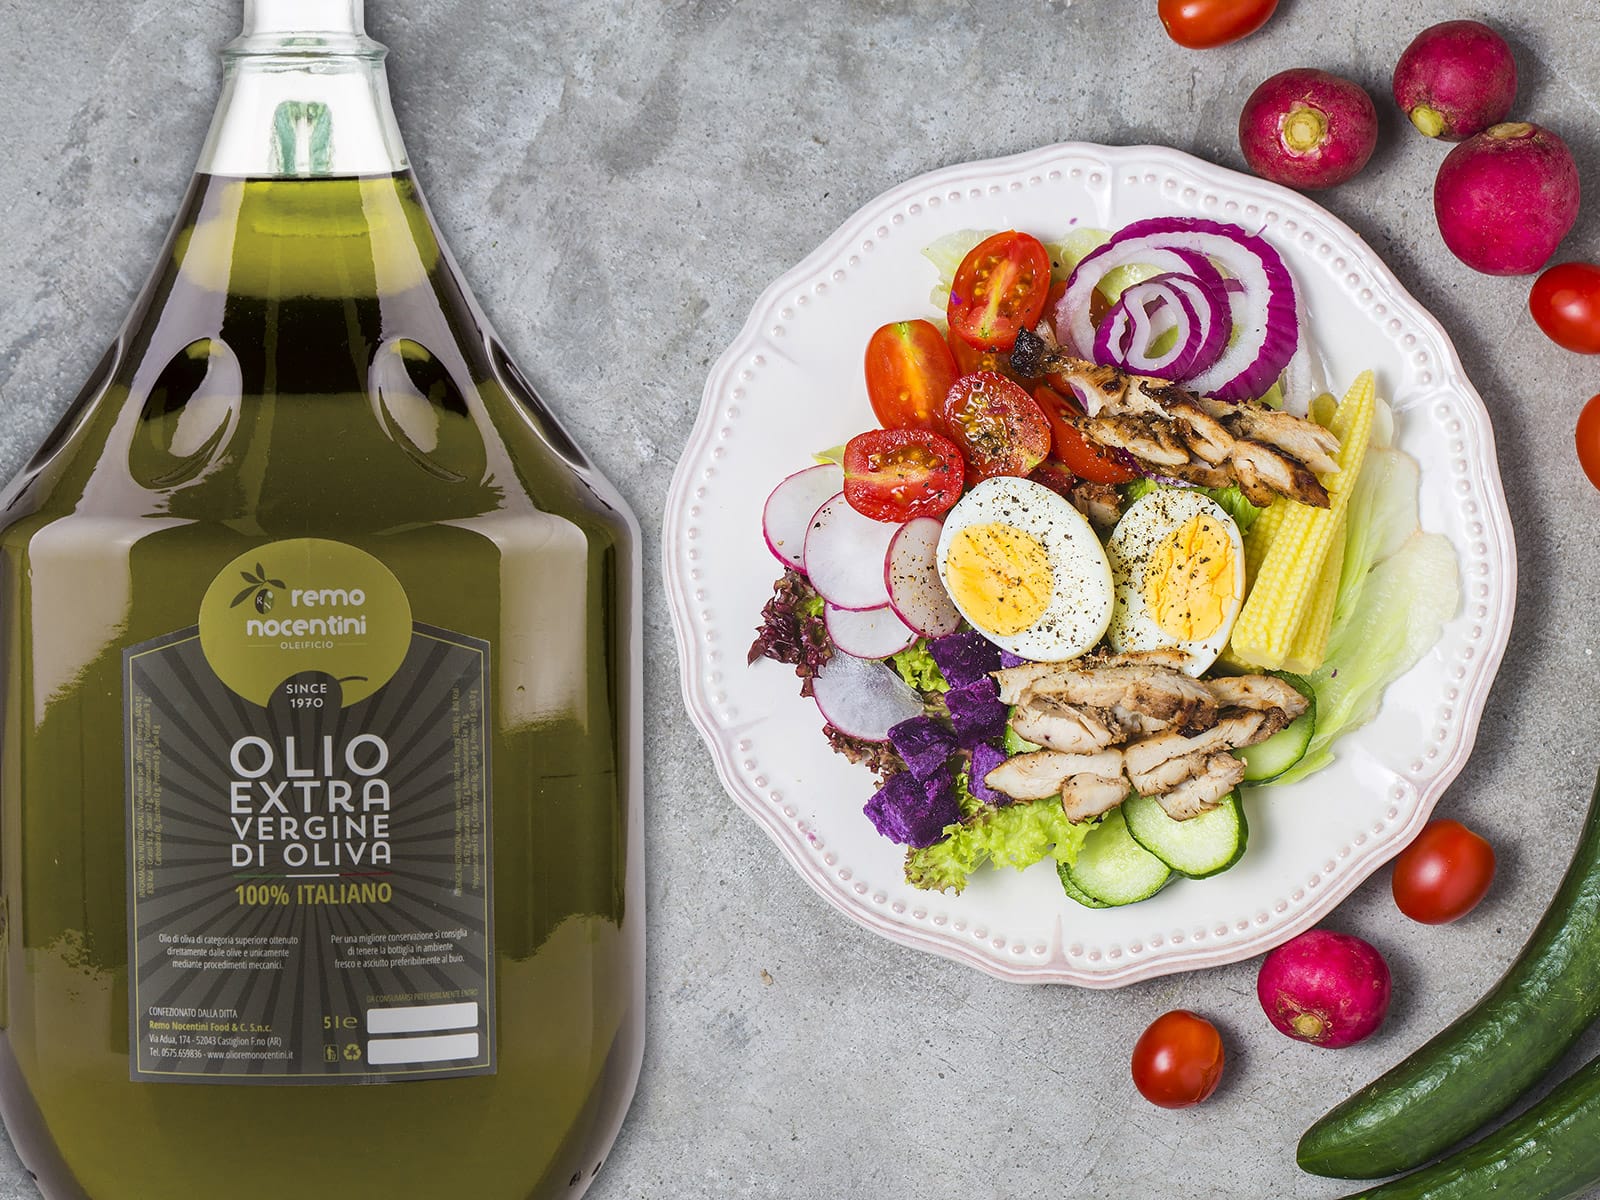 Oleificio Remo Nocentini: vendita olio extravergine d’oliva di alta qualità